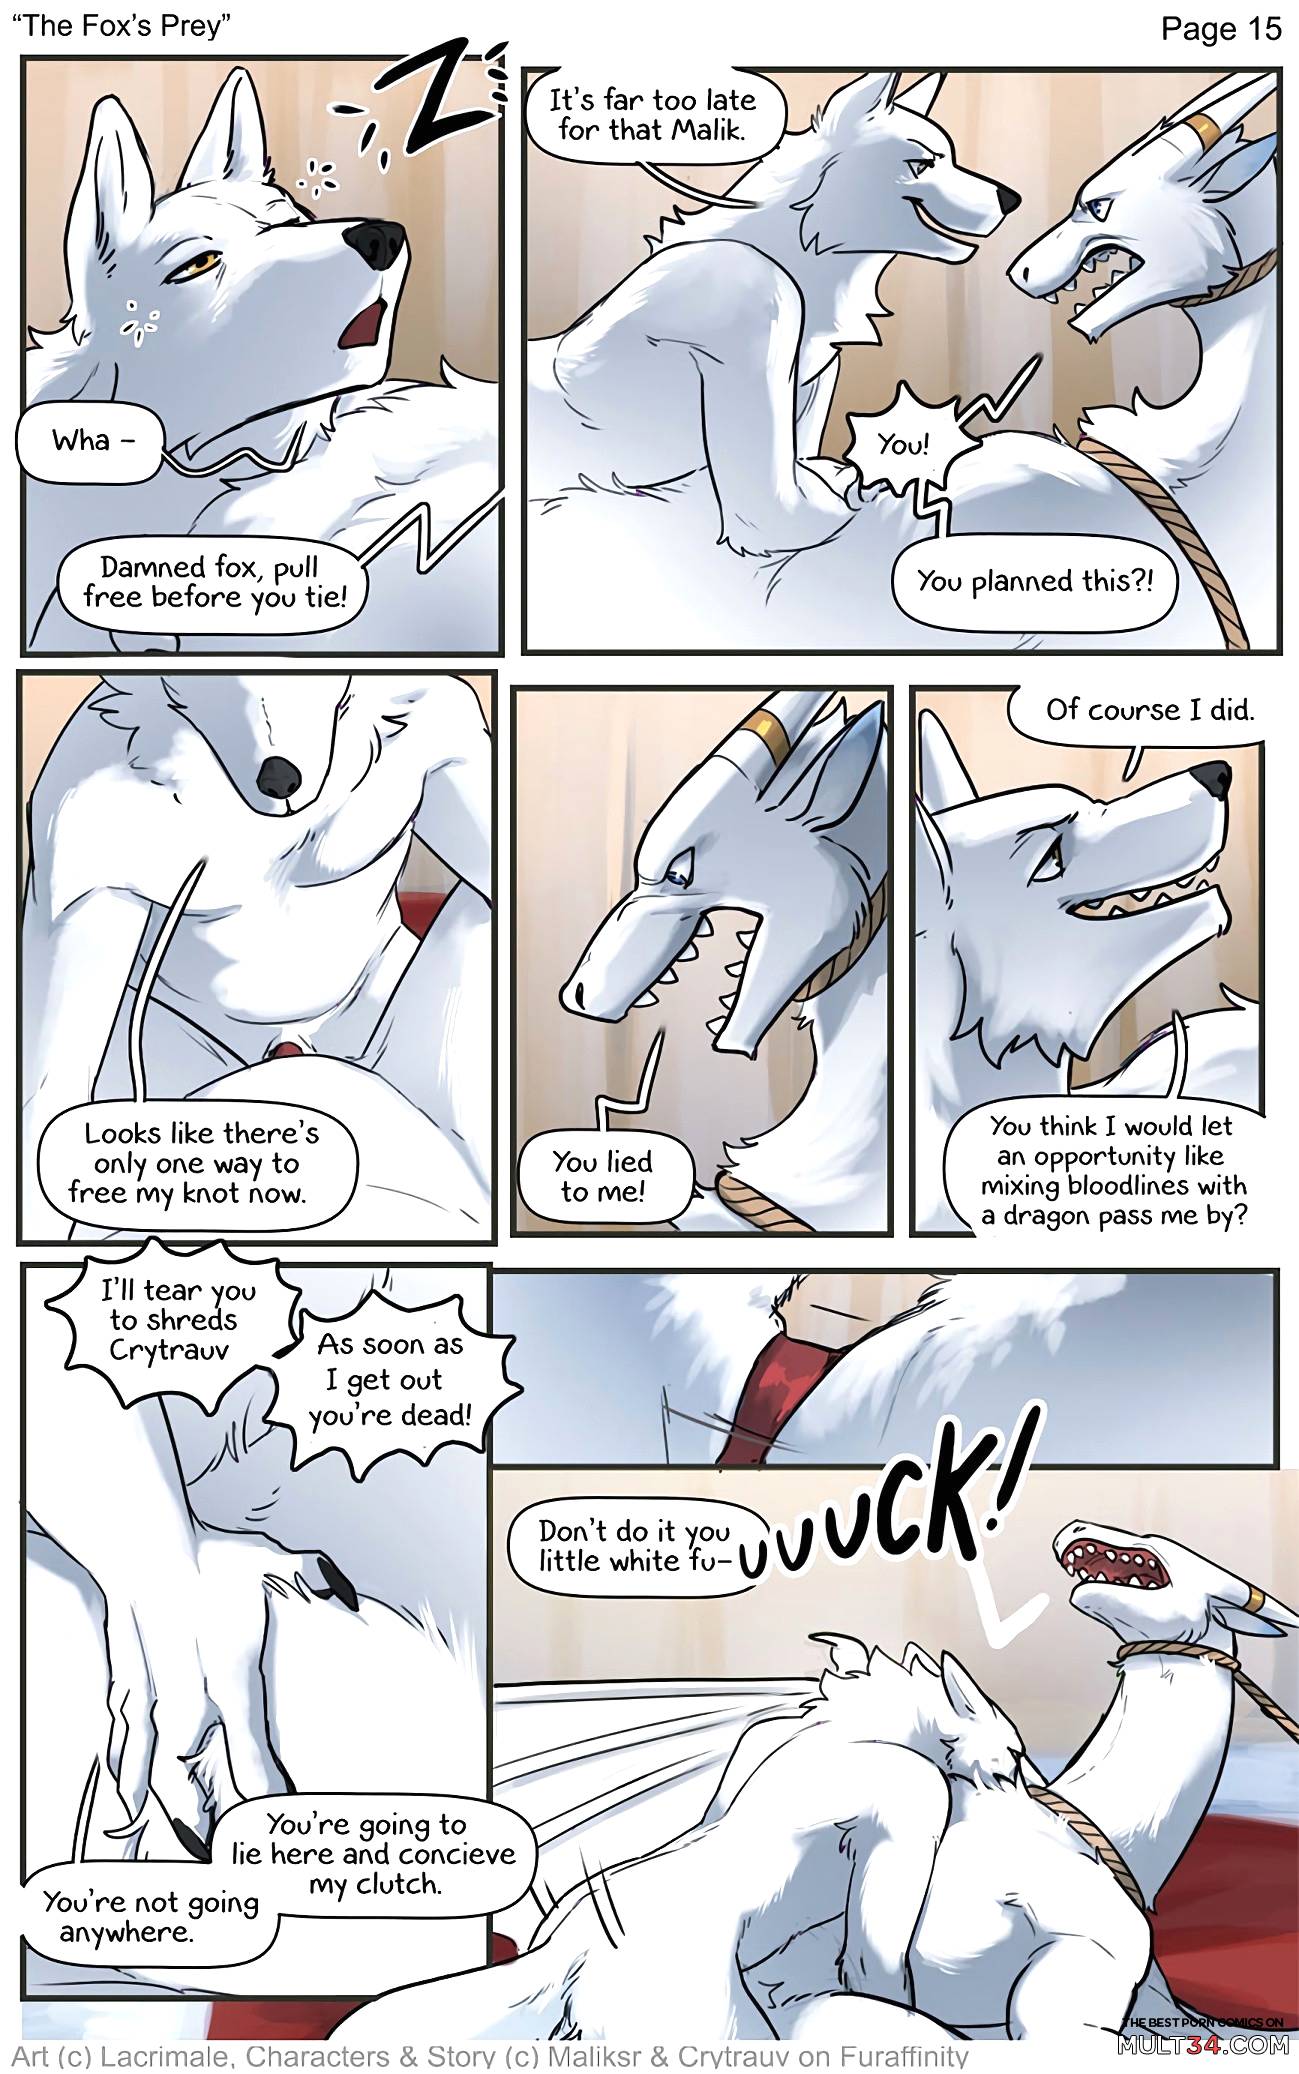 The Fox's prey page 13